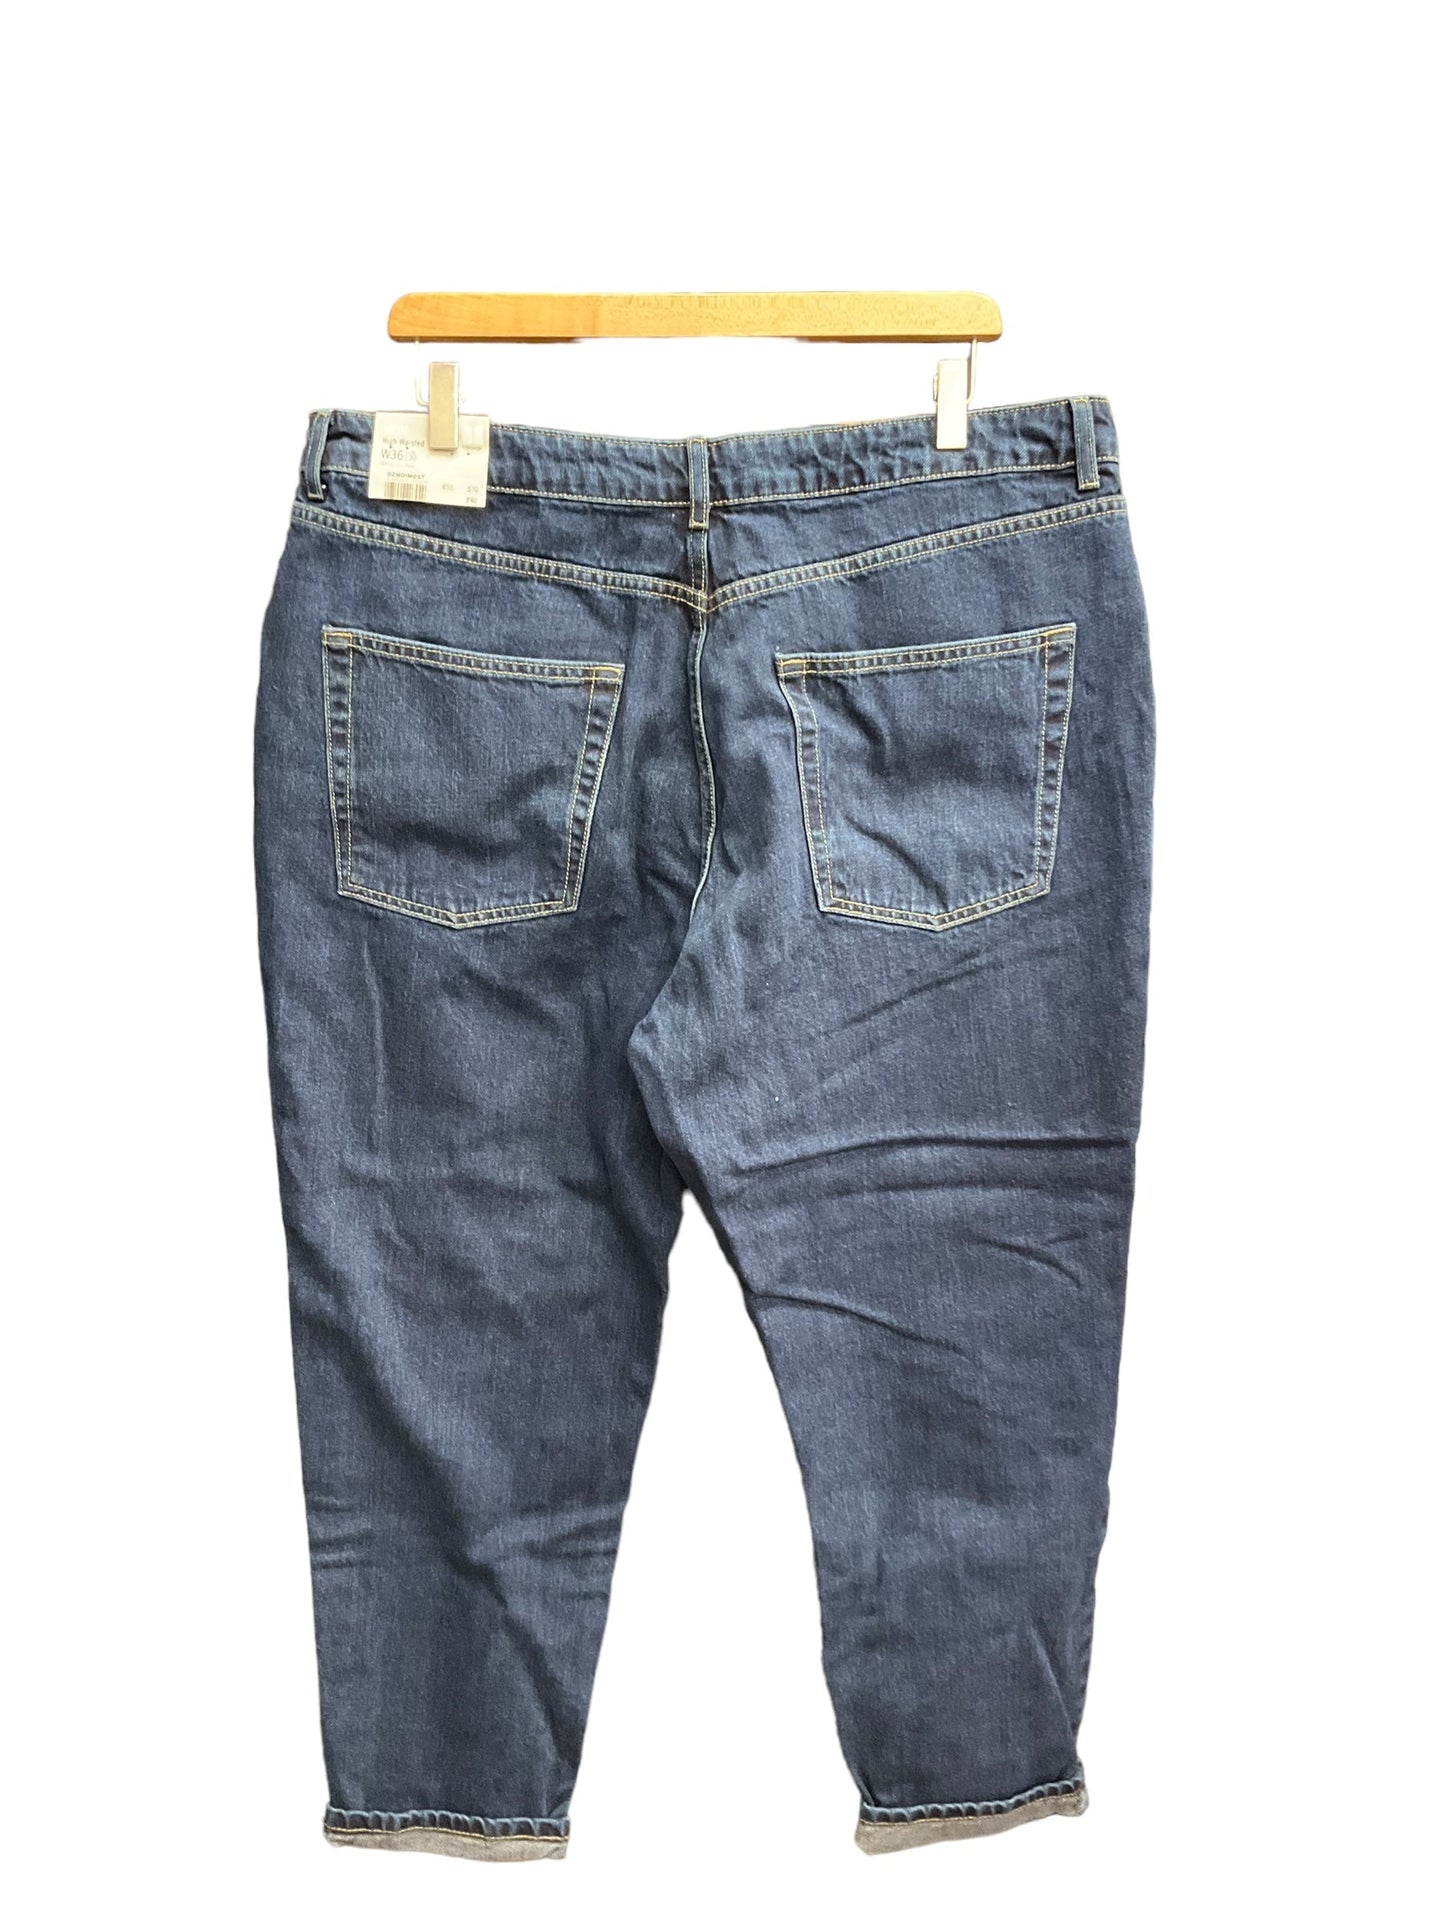 Blue Denim Jeans Boyfriend Top Shop, Size 18